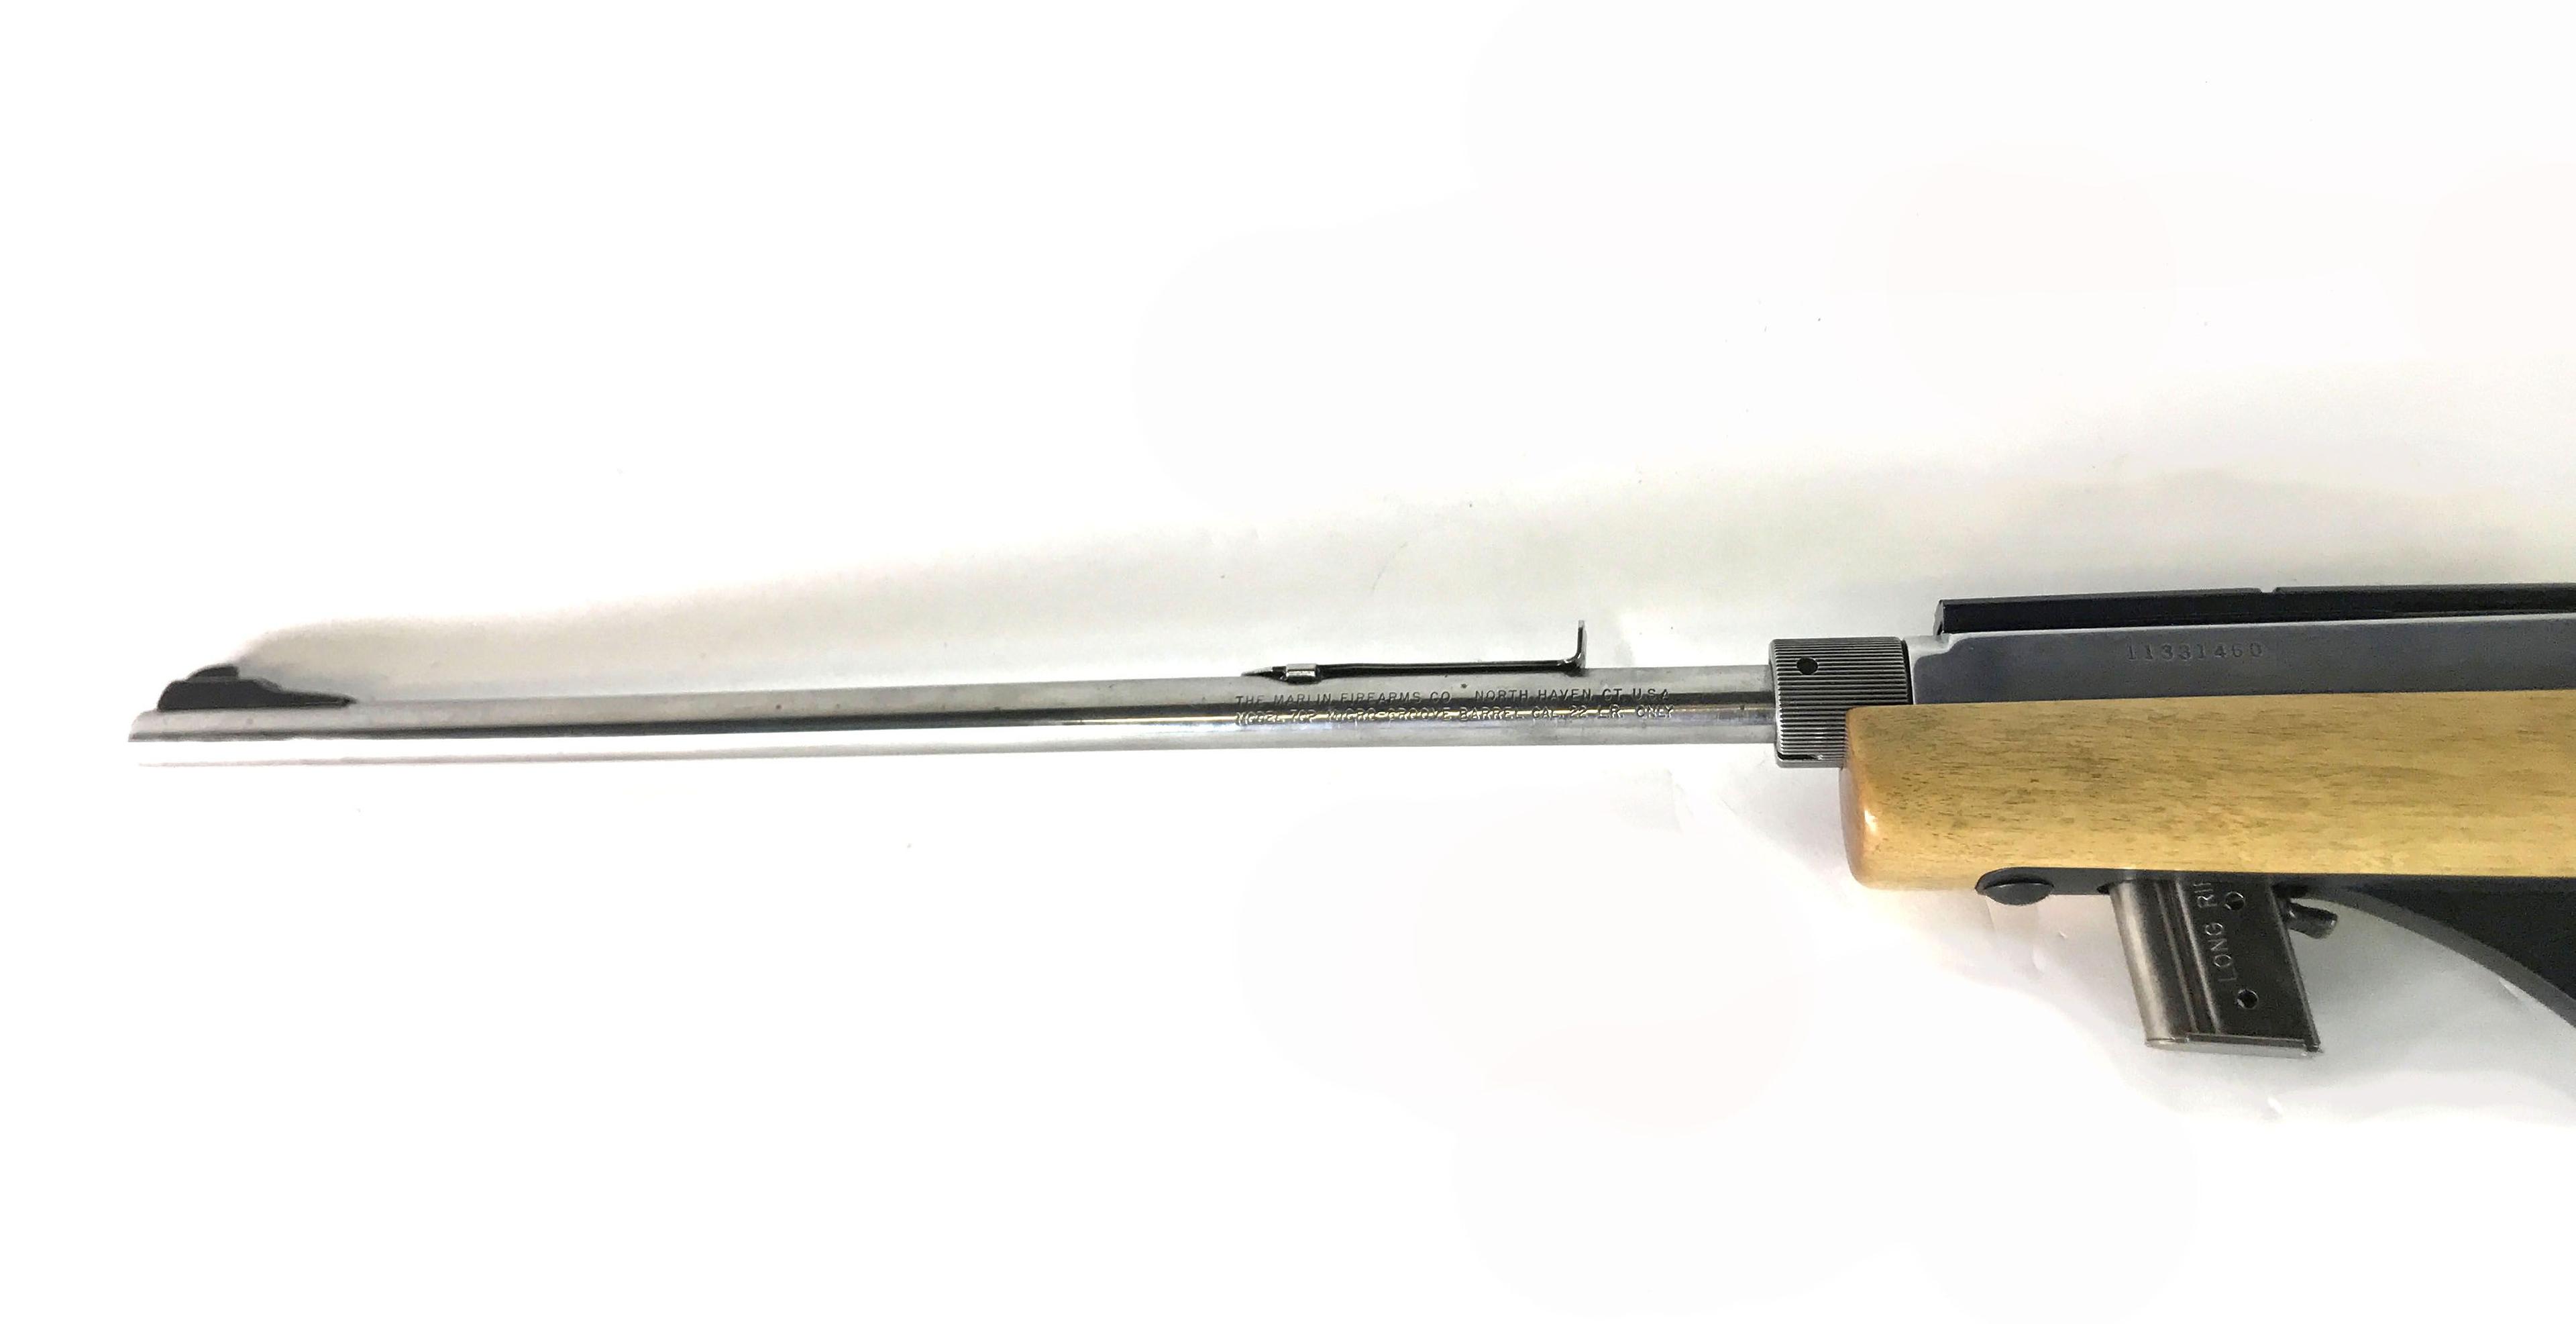 Marlin Model 70P Rifle Firearm in Violin Case